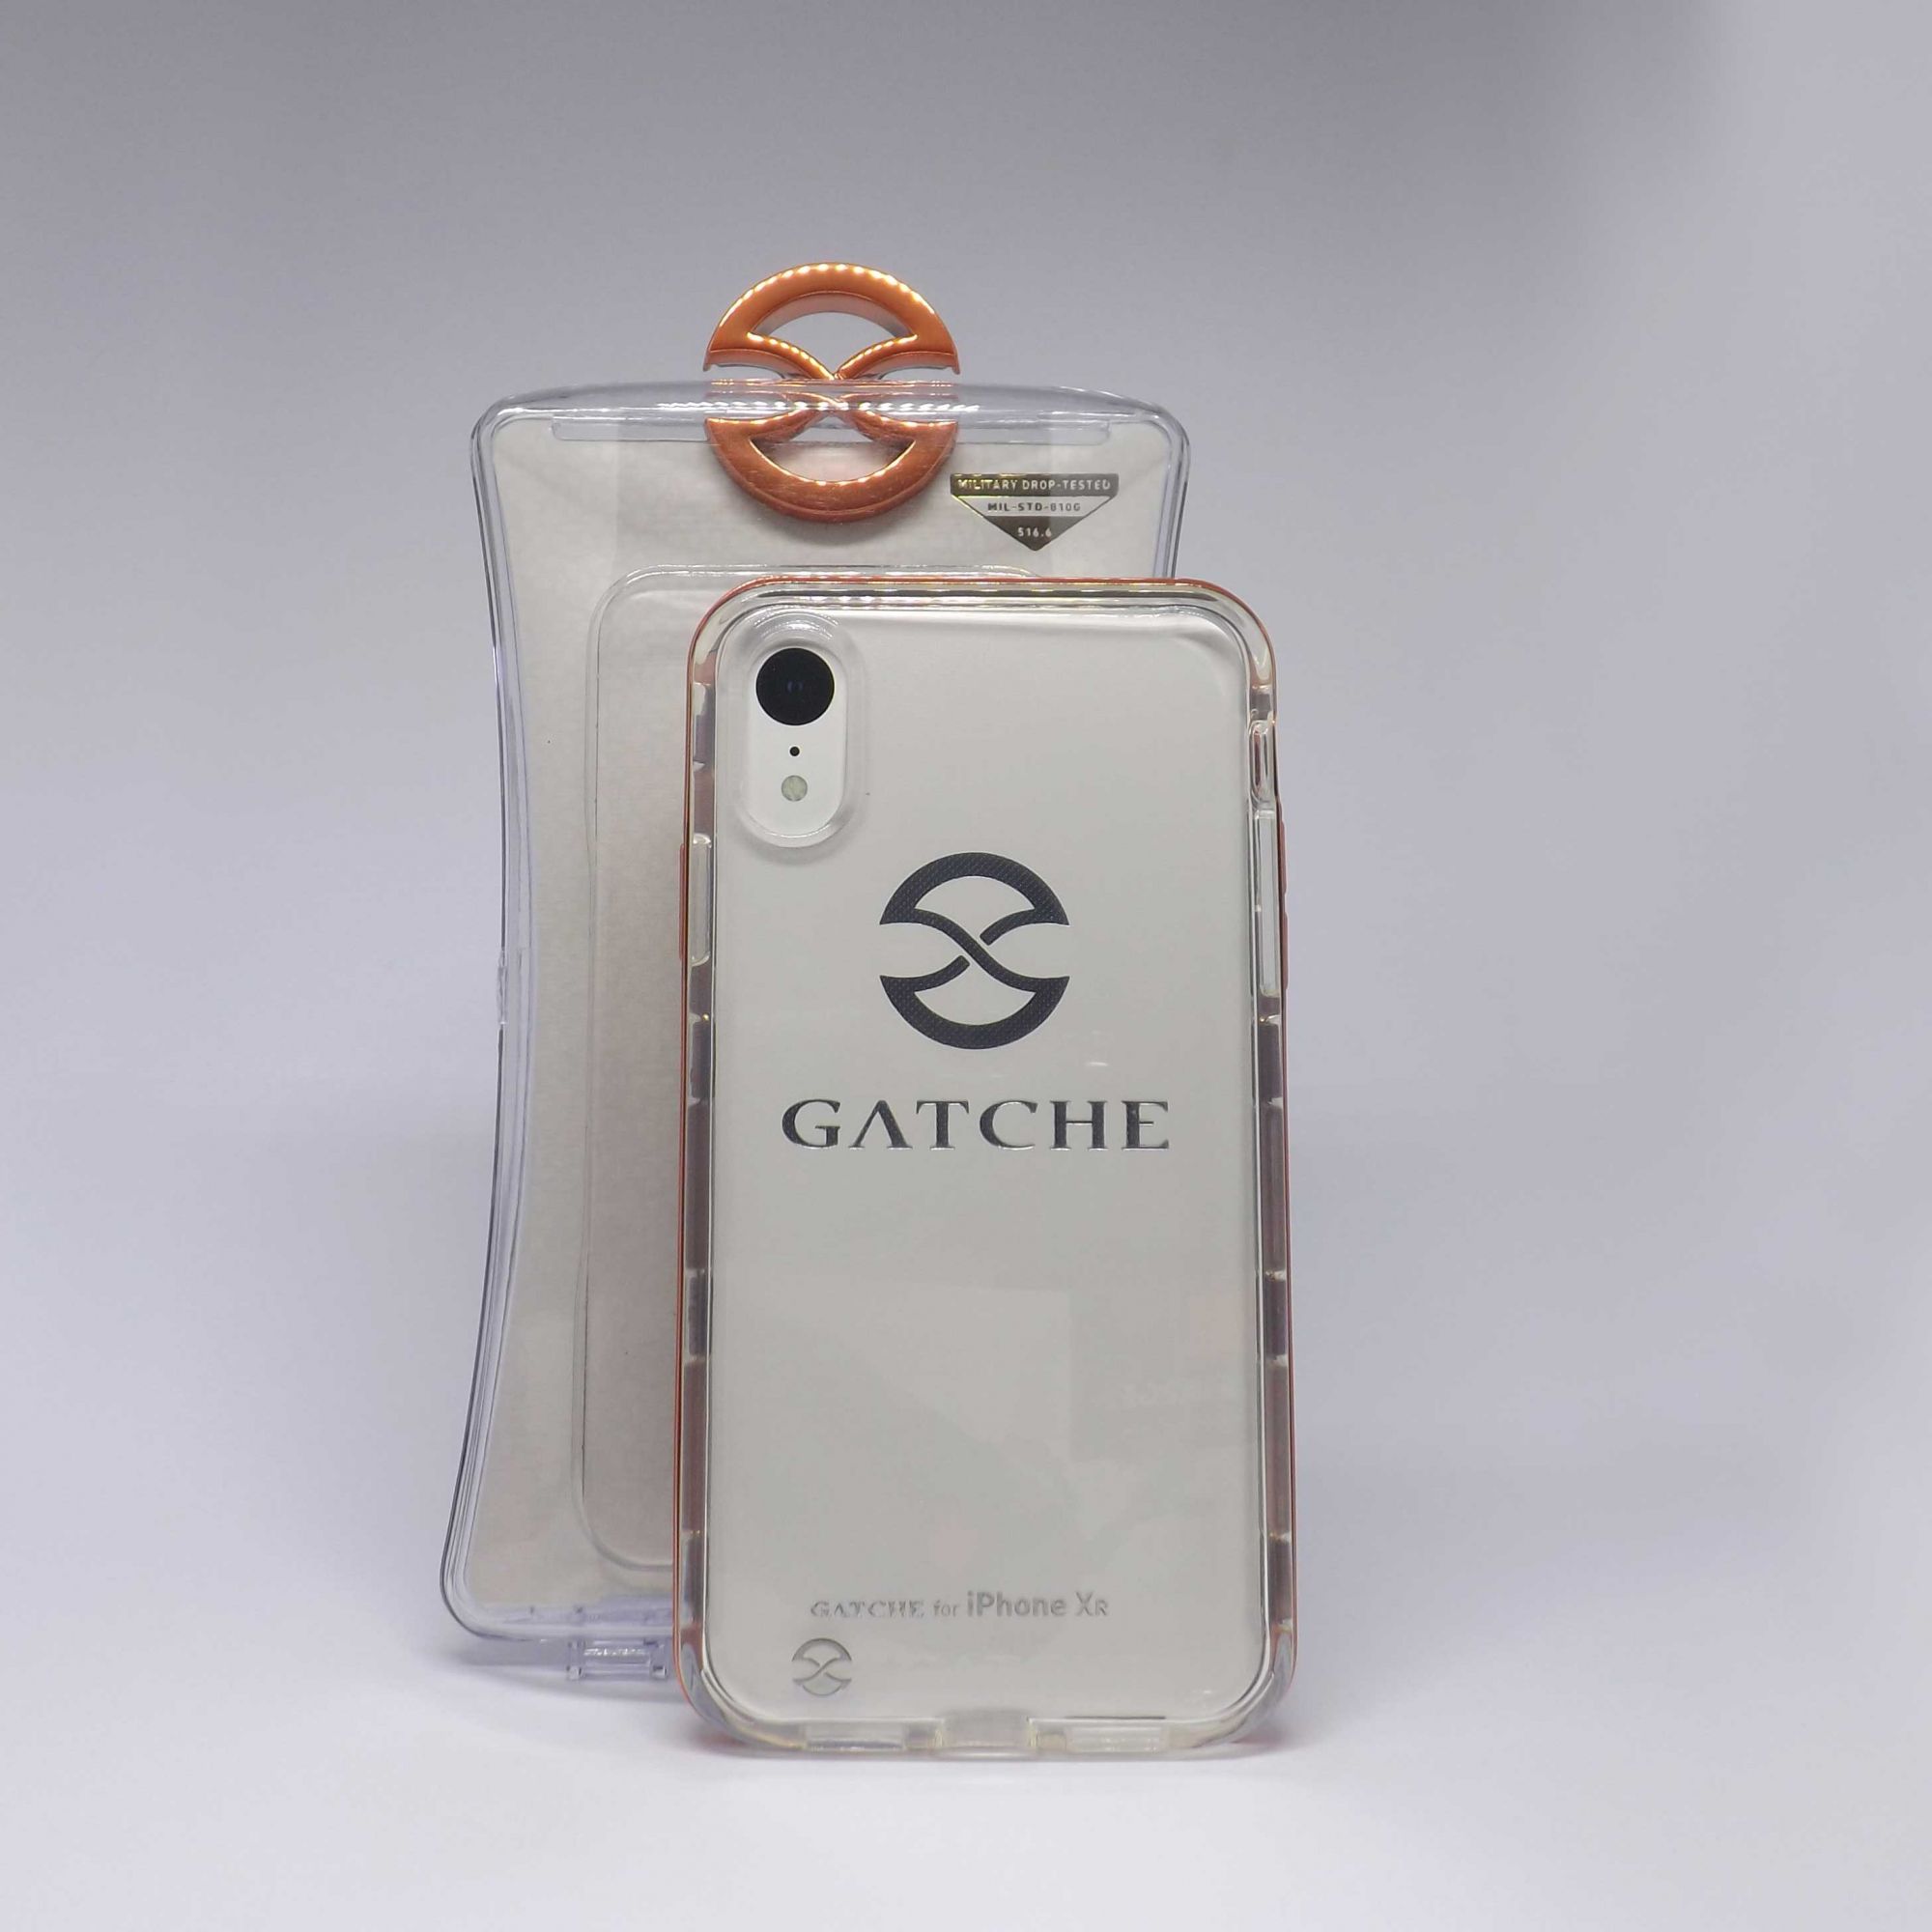 Capa Iphone Xr Gatche